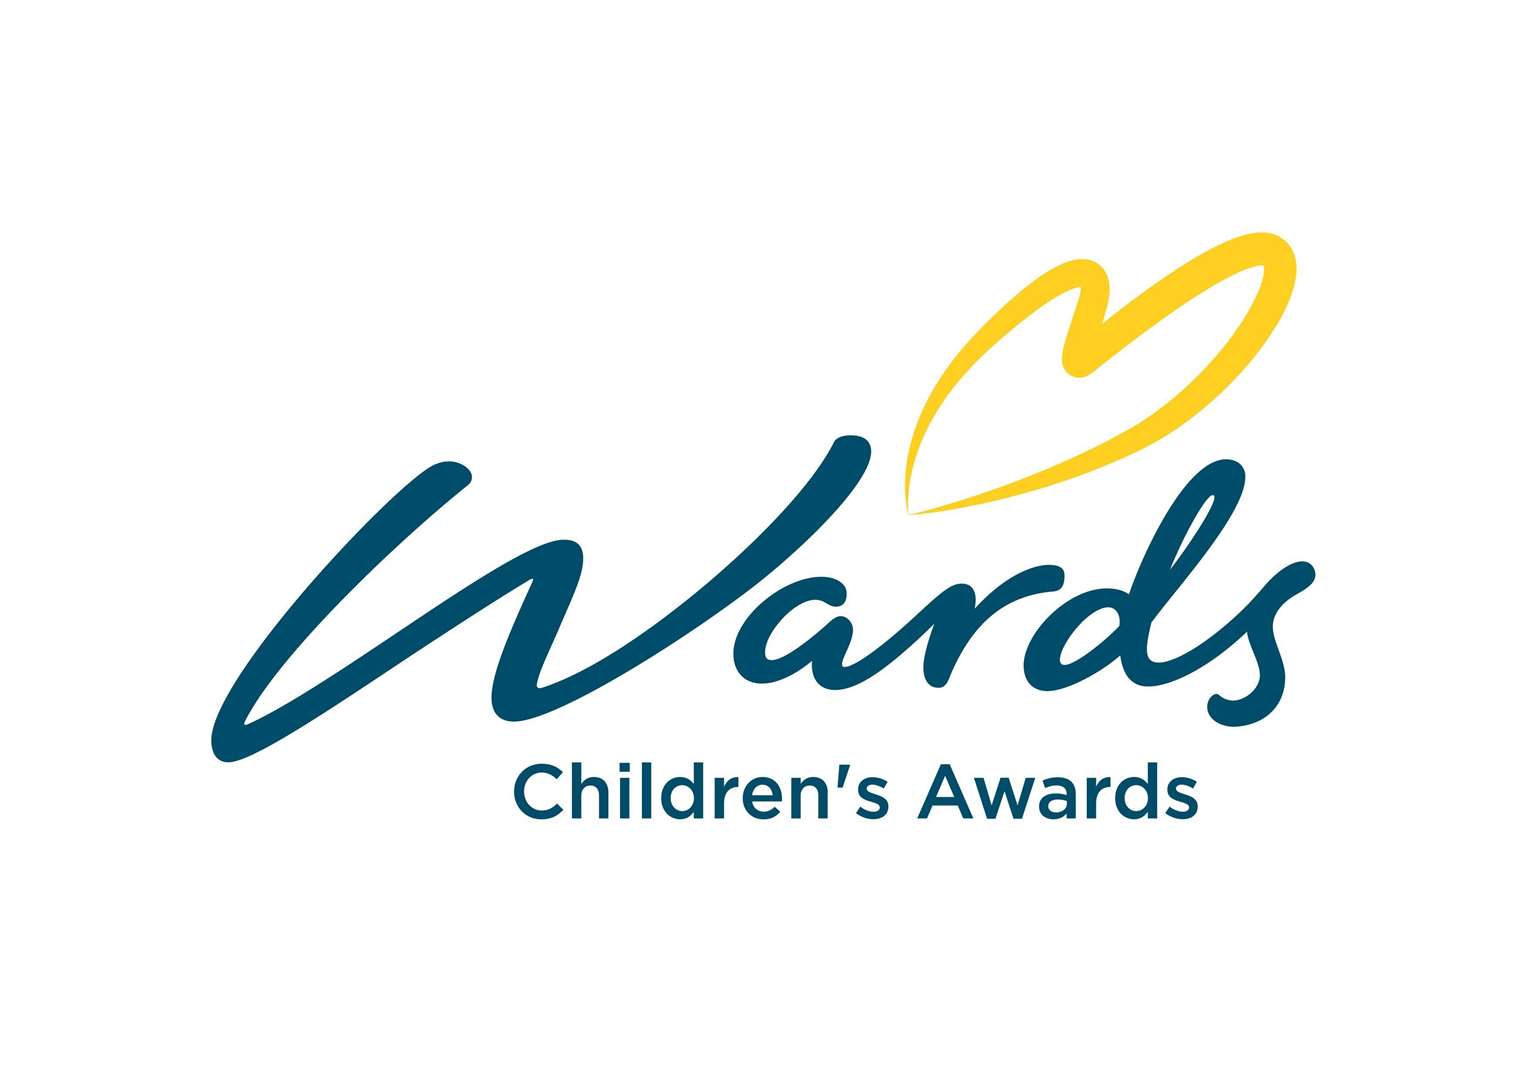 Wards Children's Awards (10884432)